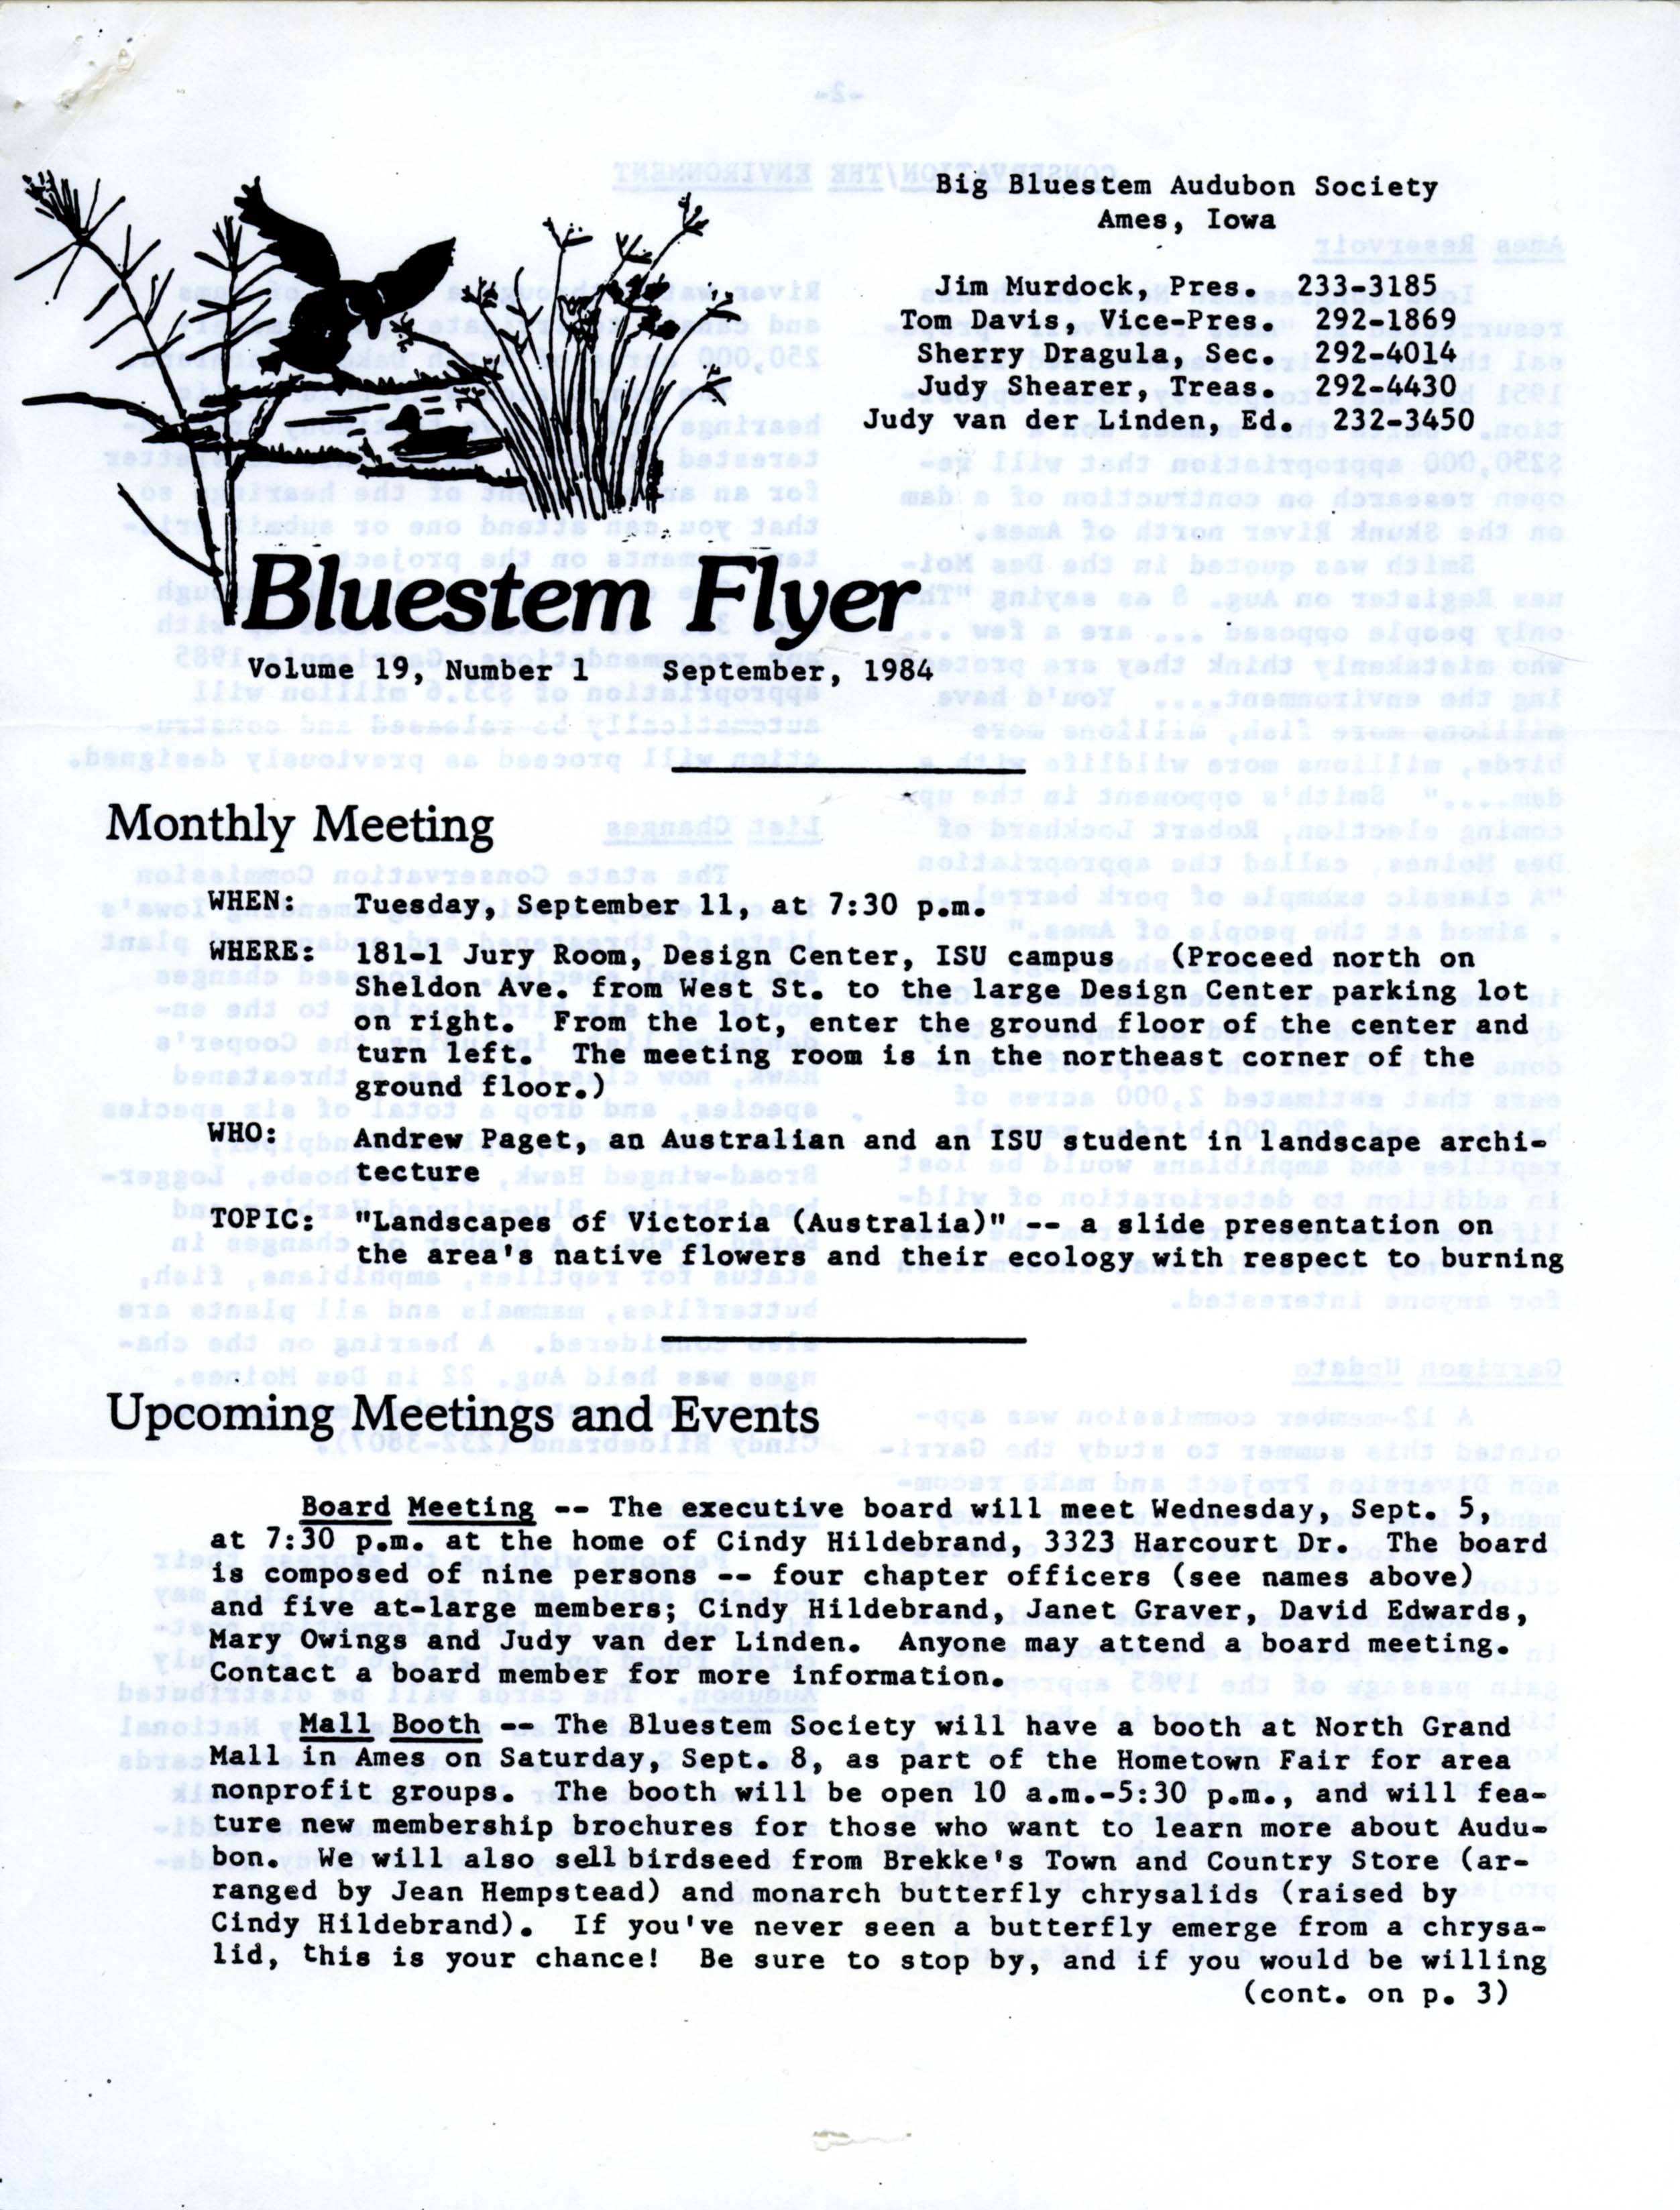 Bluestem Flyer, Volume 19, Number 1, September 1984